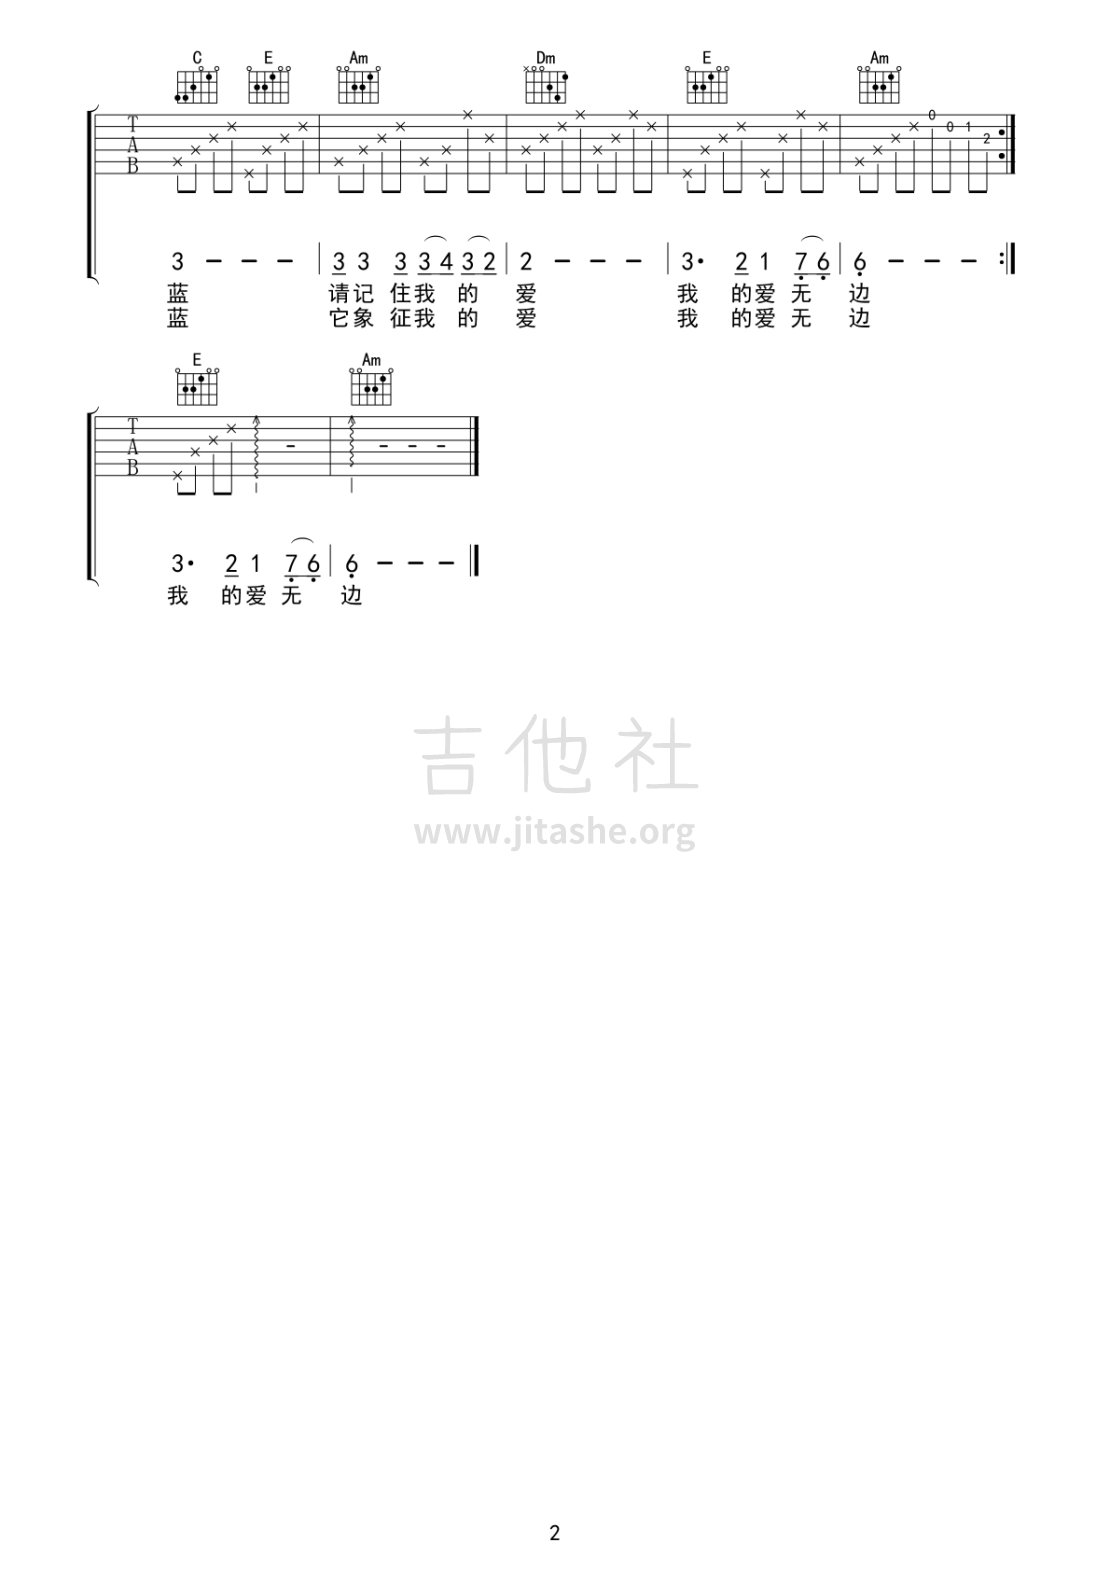 打印:蓝宝石吉他谱_群星(Various Artists)_蓝宝石02.gif